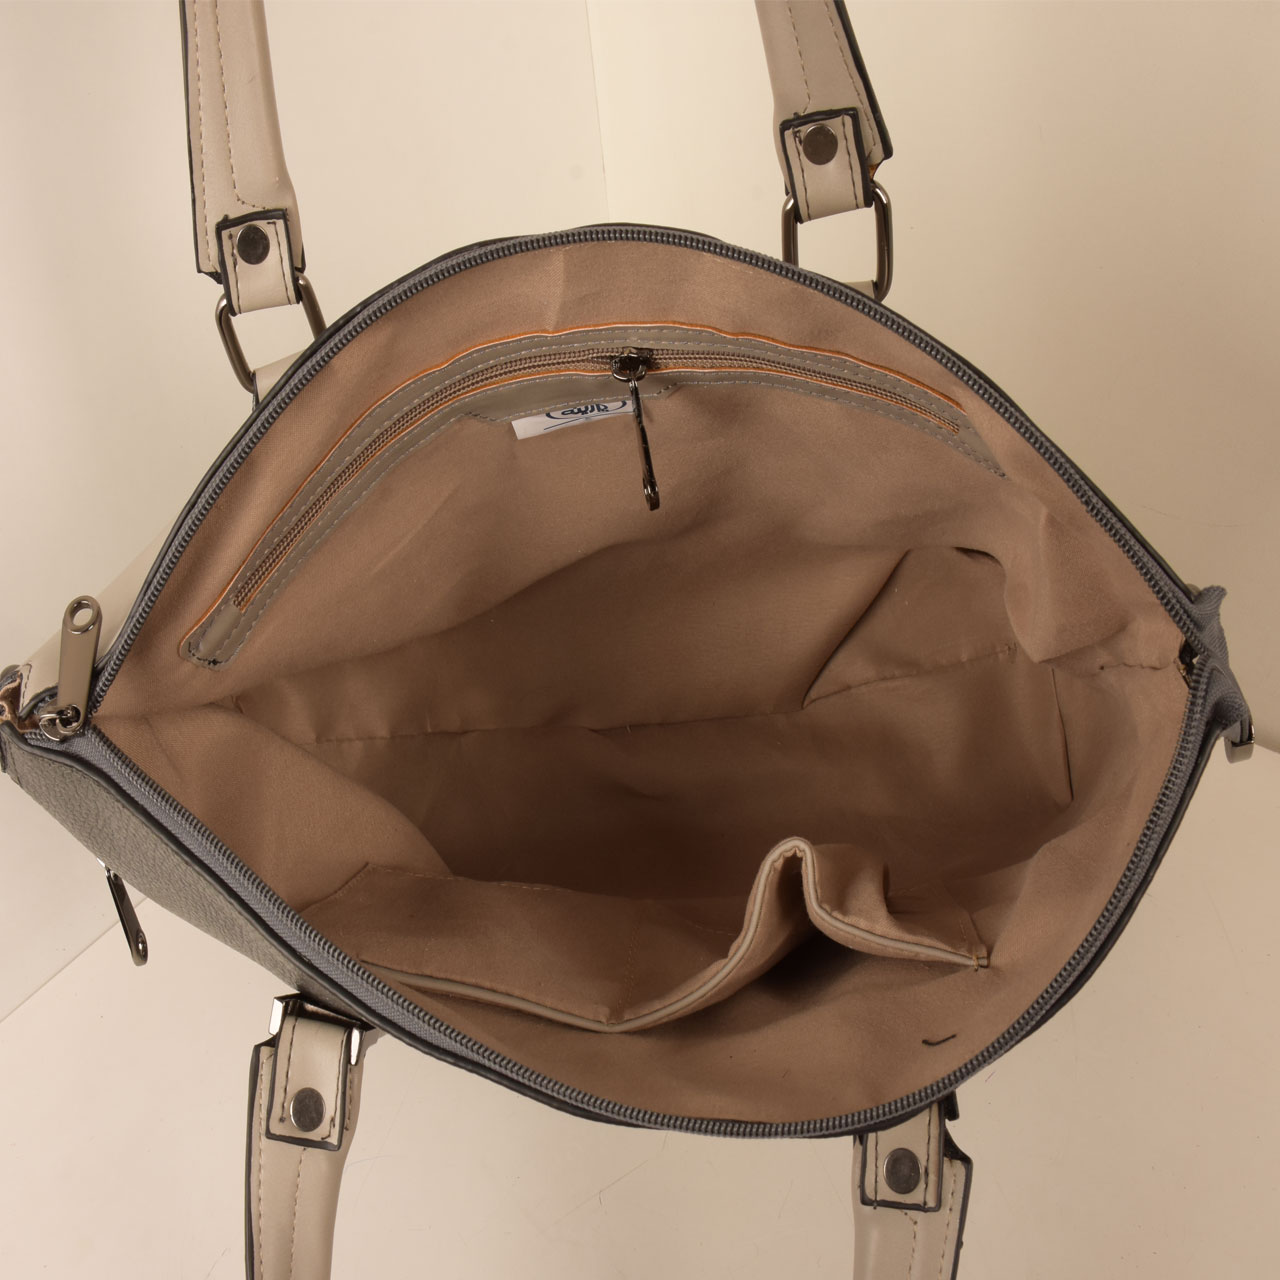 کیف دستی زنانه پارینه چرم مدل PLV165-12-1587 -  - 16